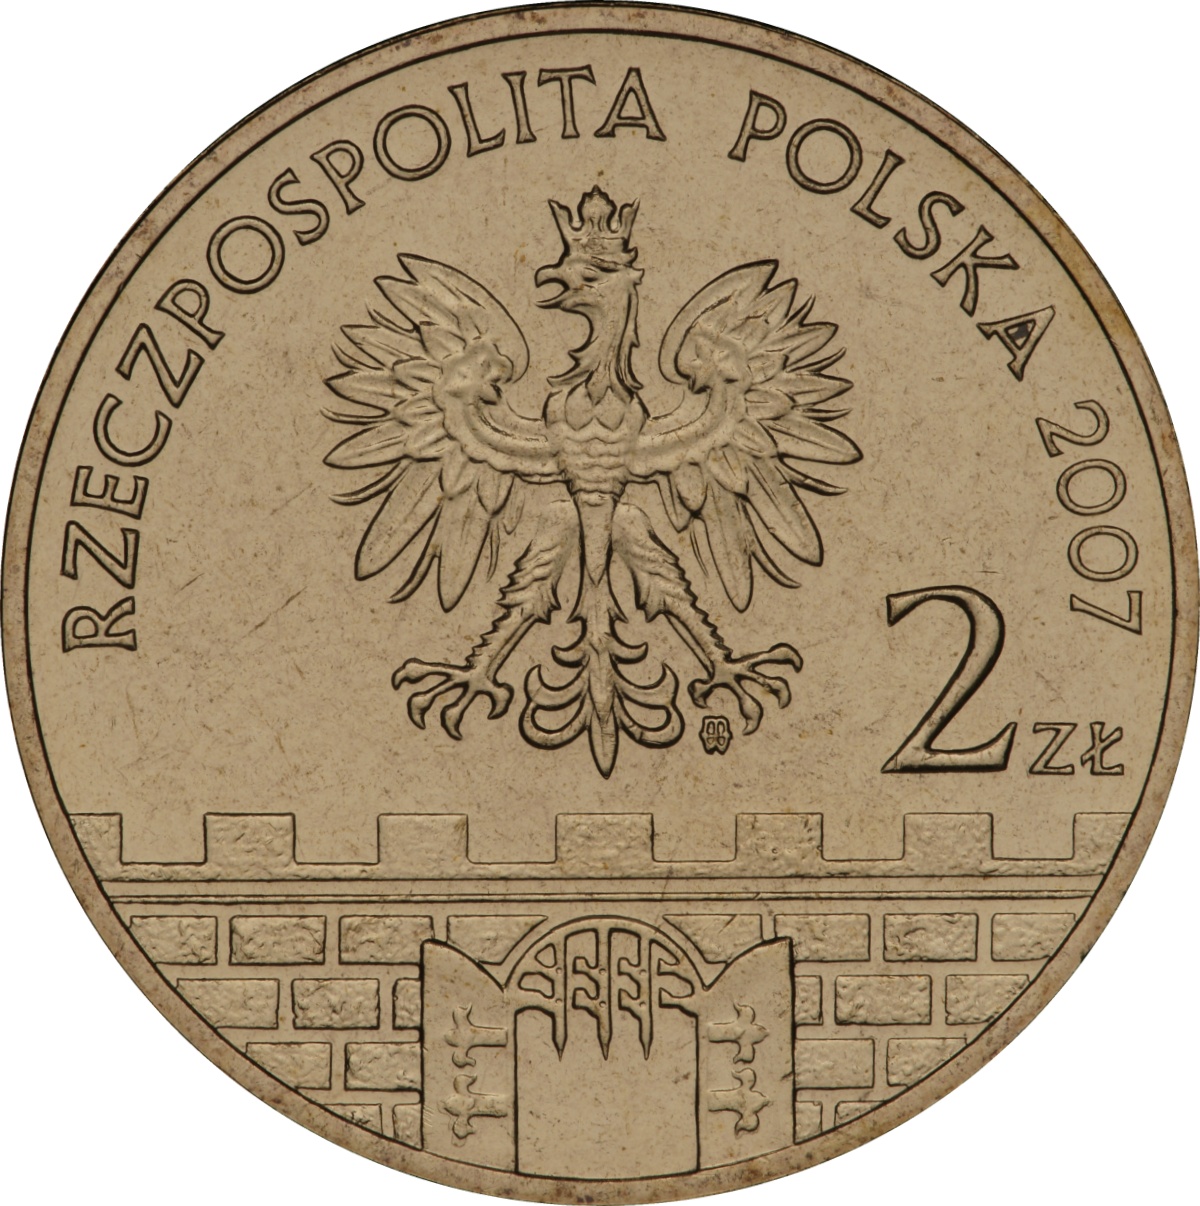 2zl-kwidzyn-awers-monety